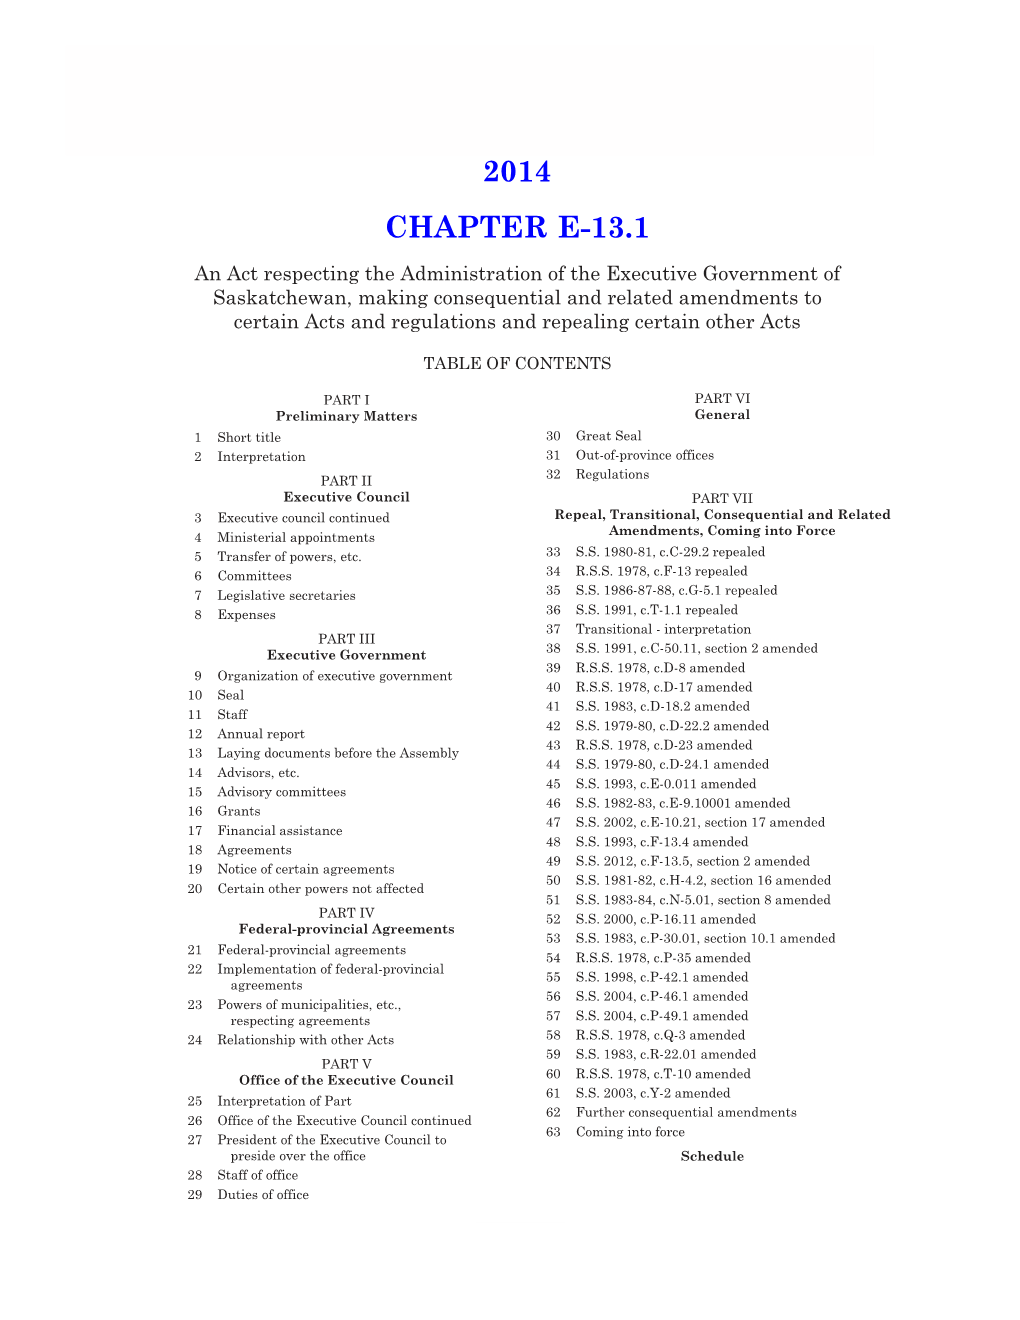 2014 Chapter E-13.1